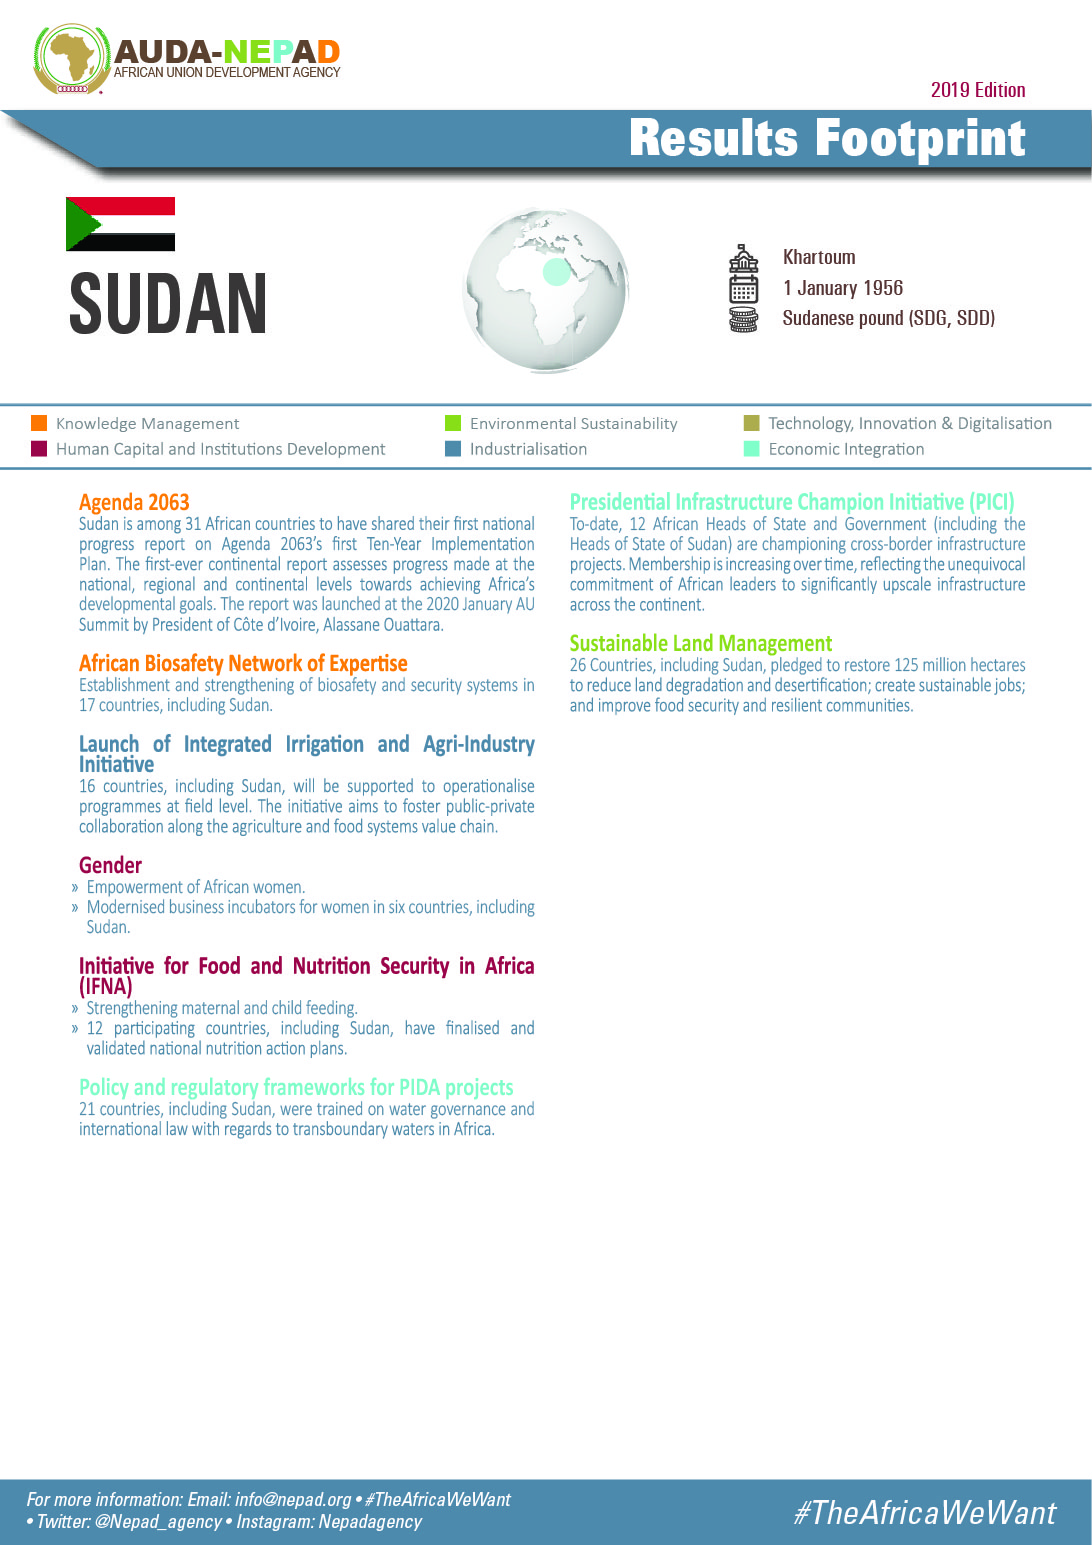 2019 AUDA-NEPAD Footprint: Country Profiles: Sudan